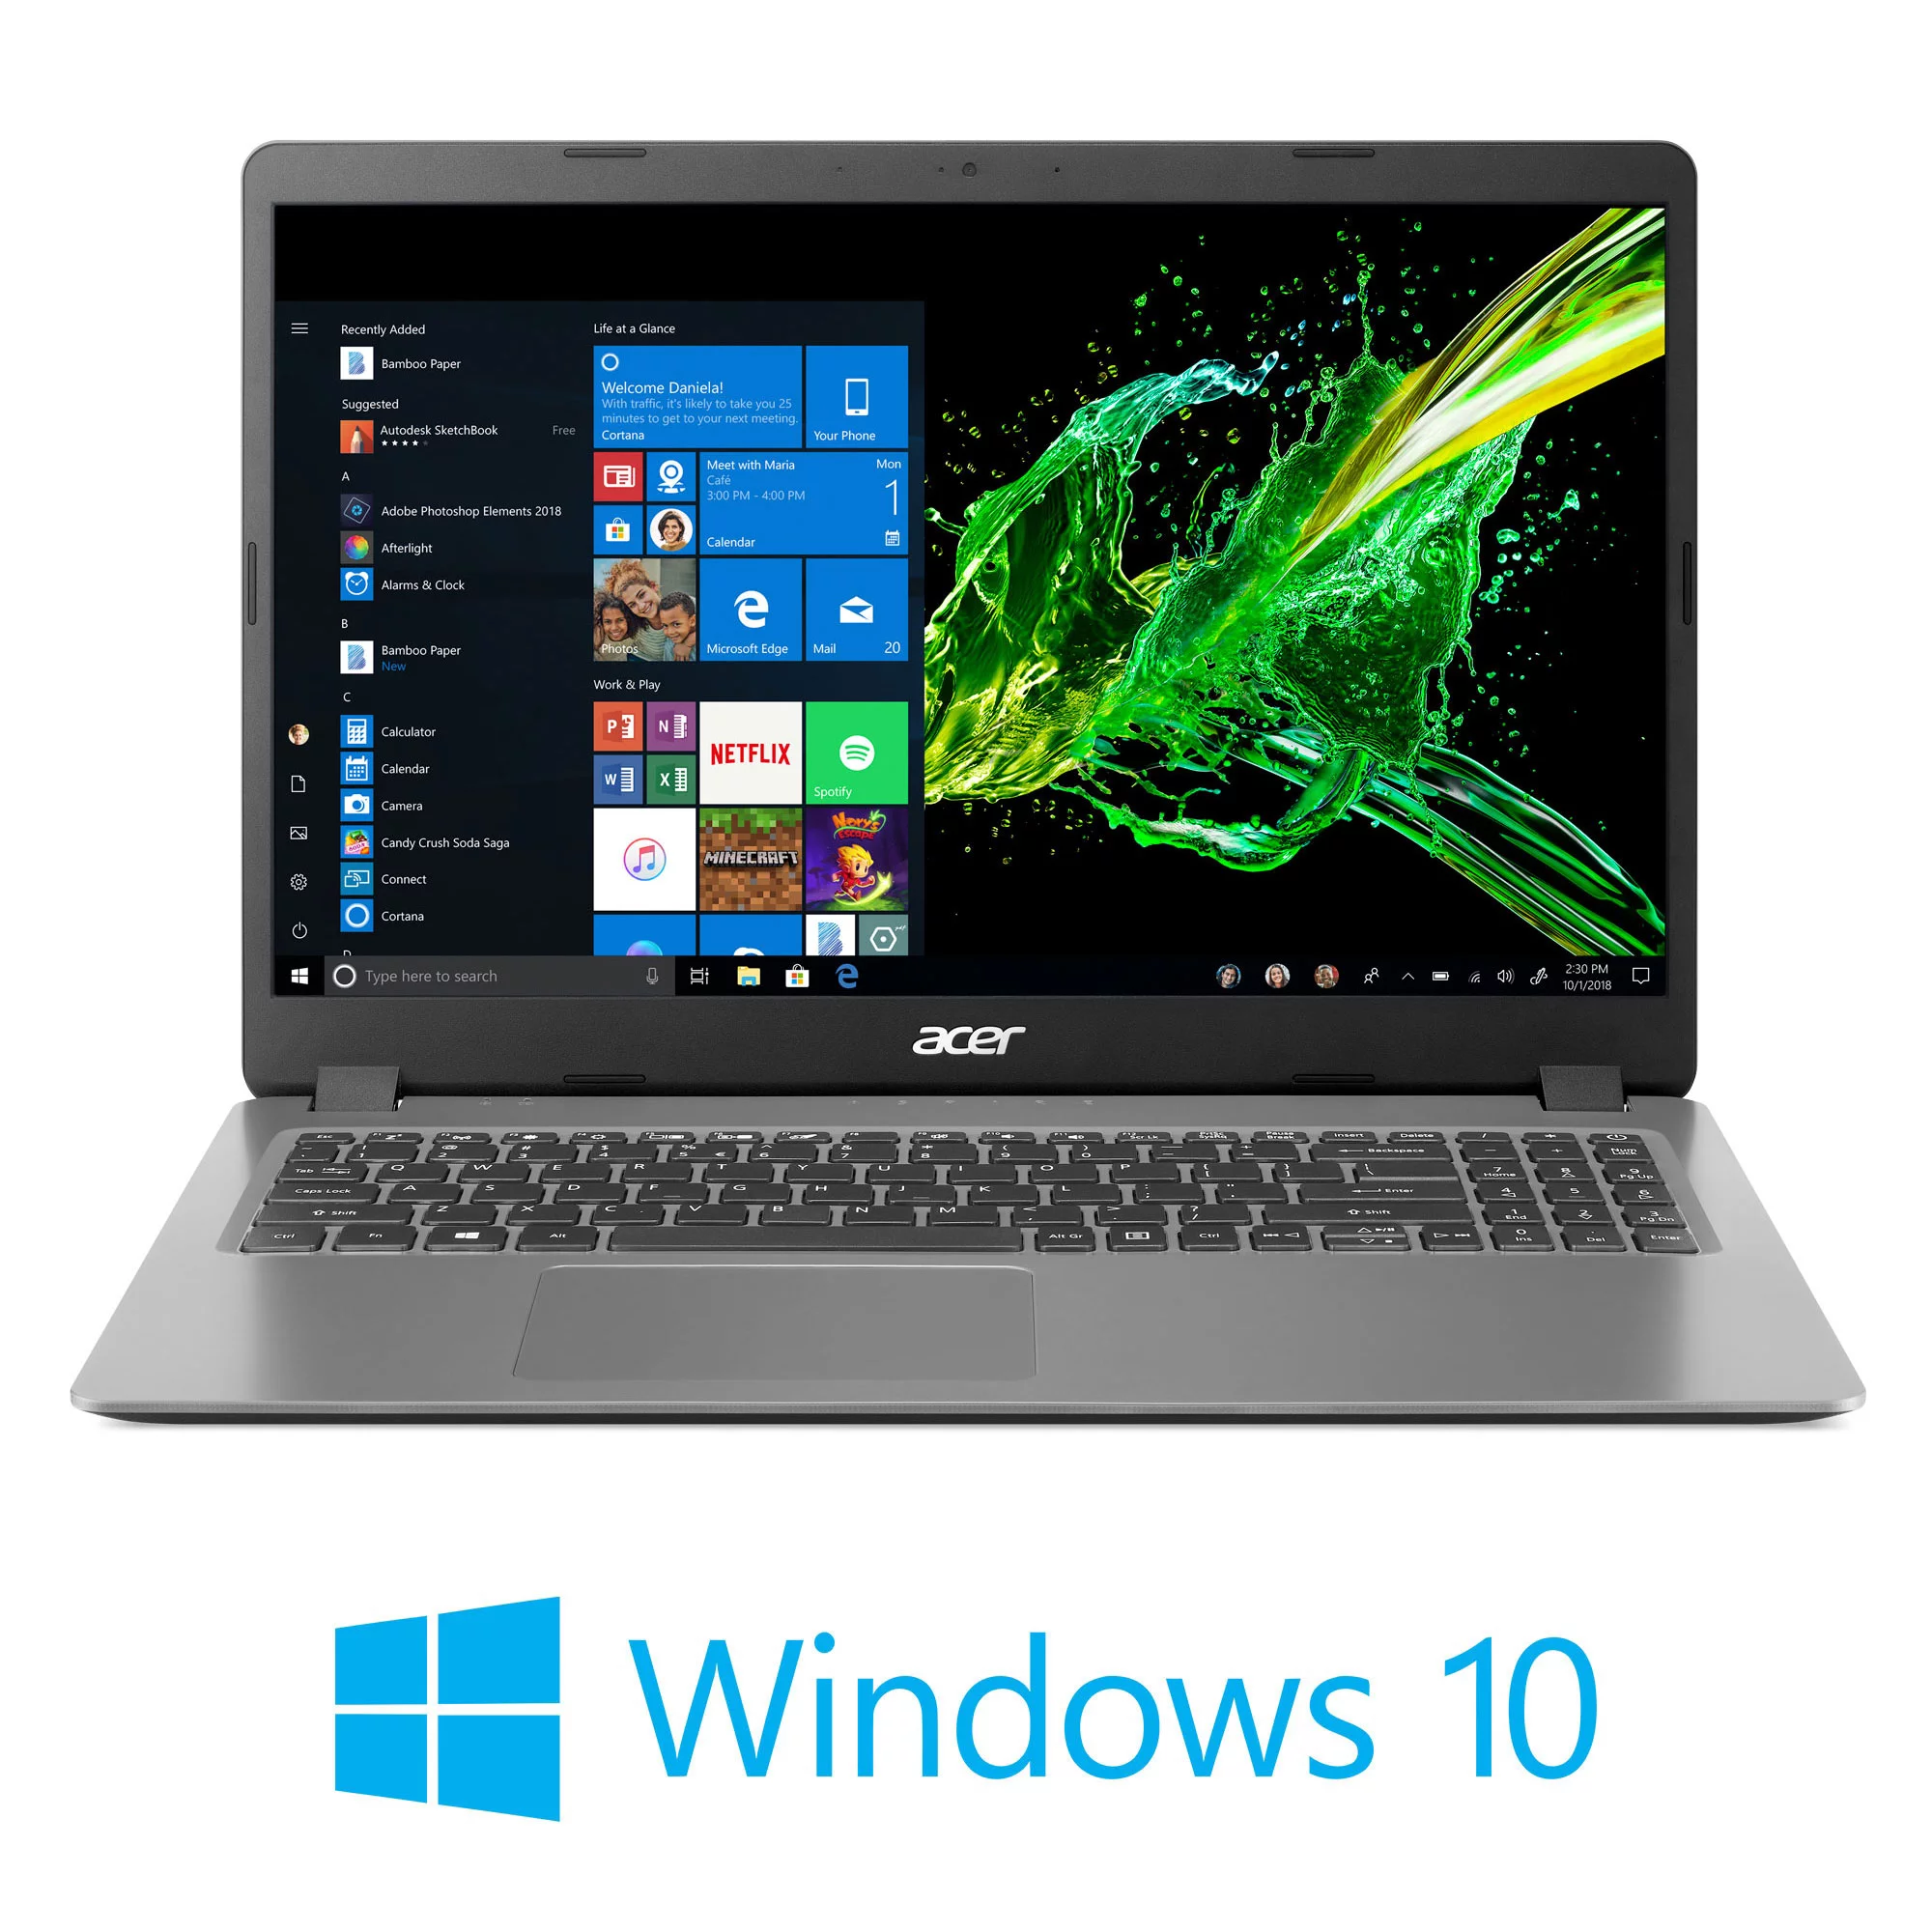 Acer Aspire 3 A315-56-594W, 15.6" Full HD, 10th Gen Intel Core i5-1035G1, 8GB DDR4, 256GB NVMe SSD, Windows 10 Home